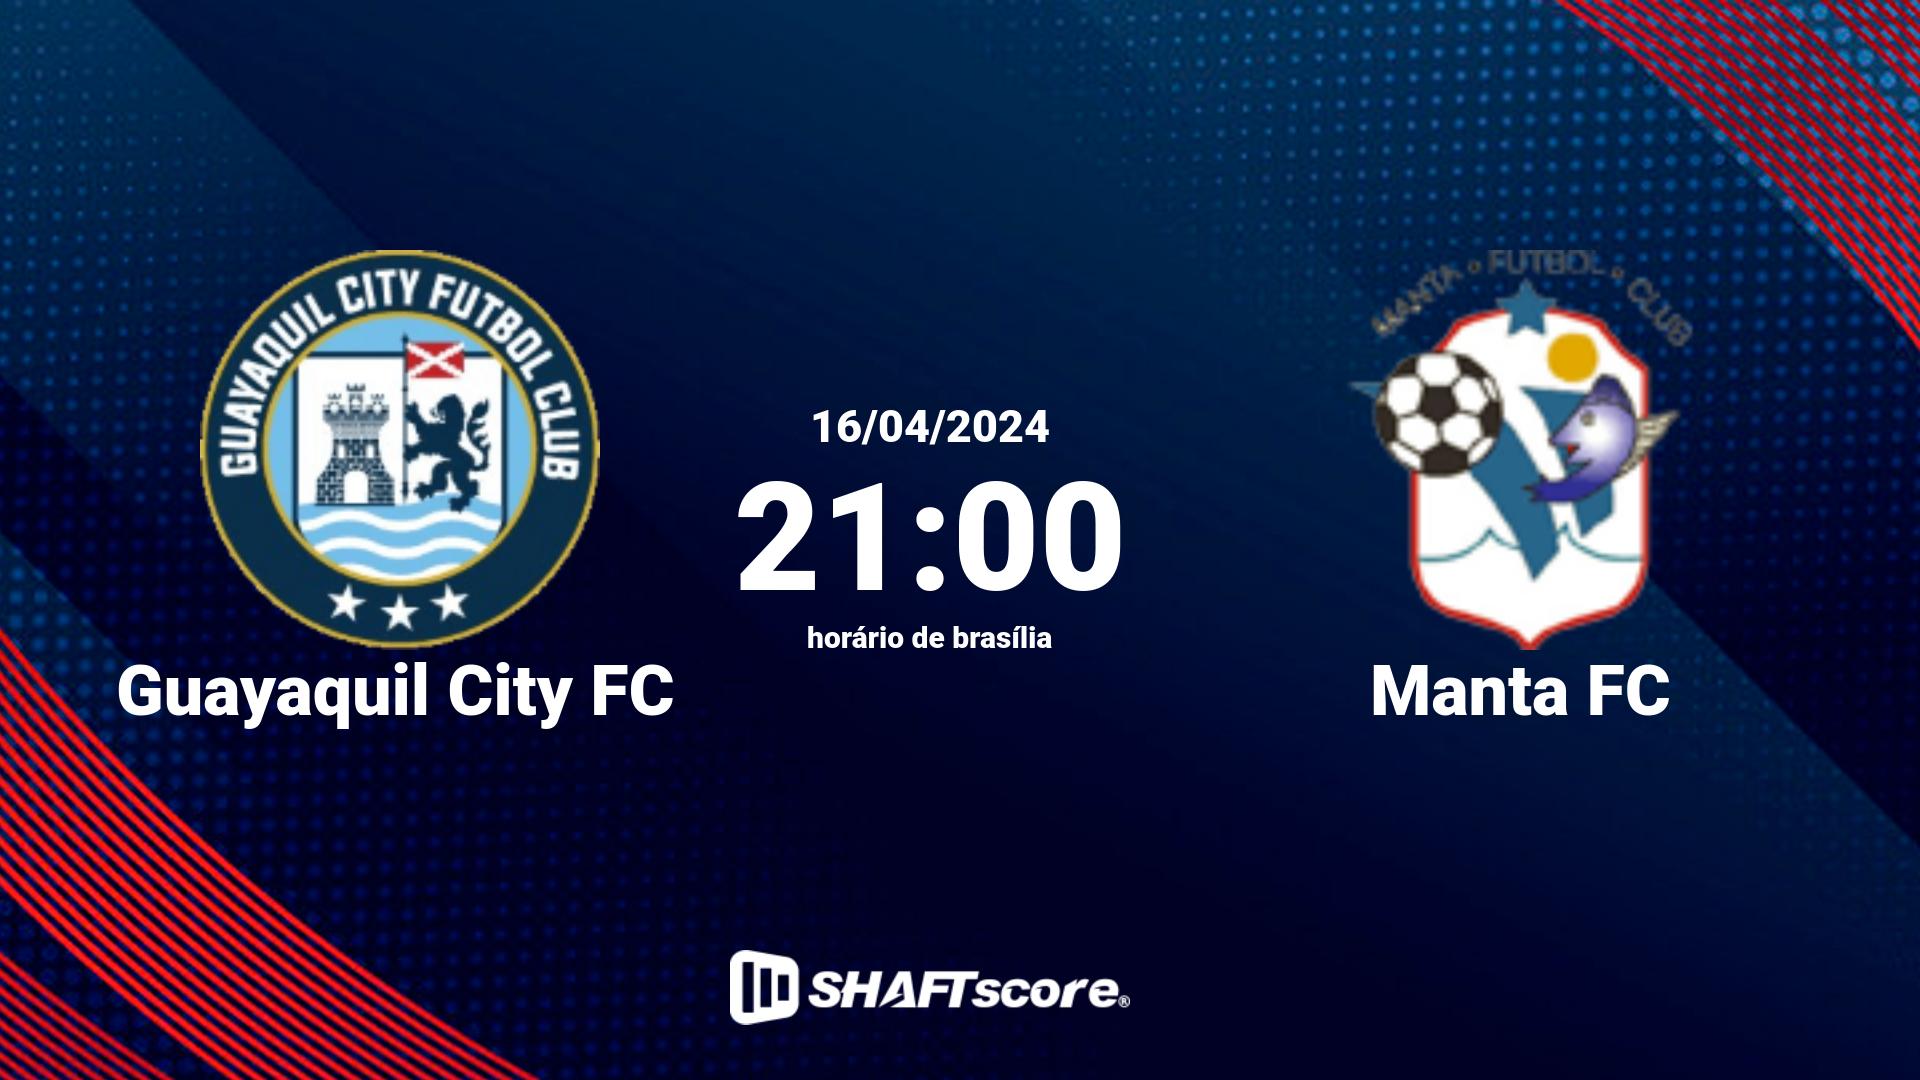 Estatísticas do jogo Guayaquil City FC vs Manta FC 16.04 21:00